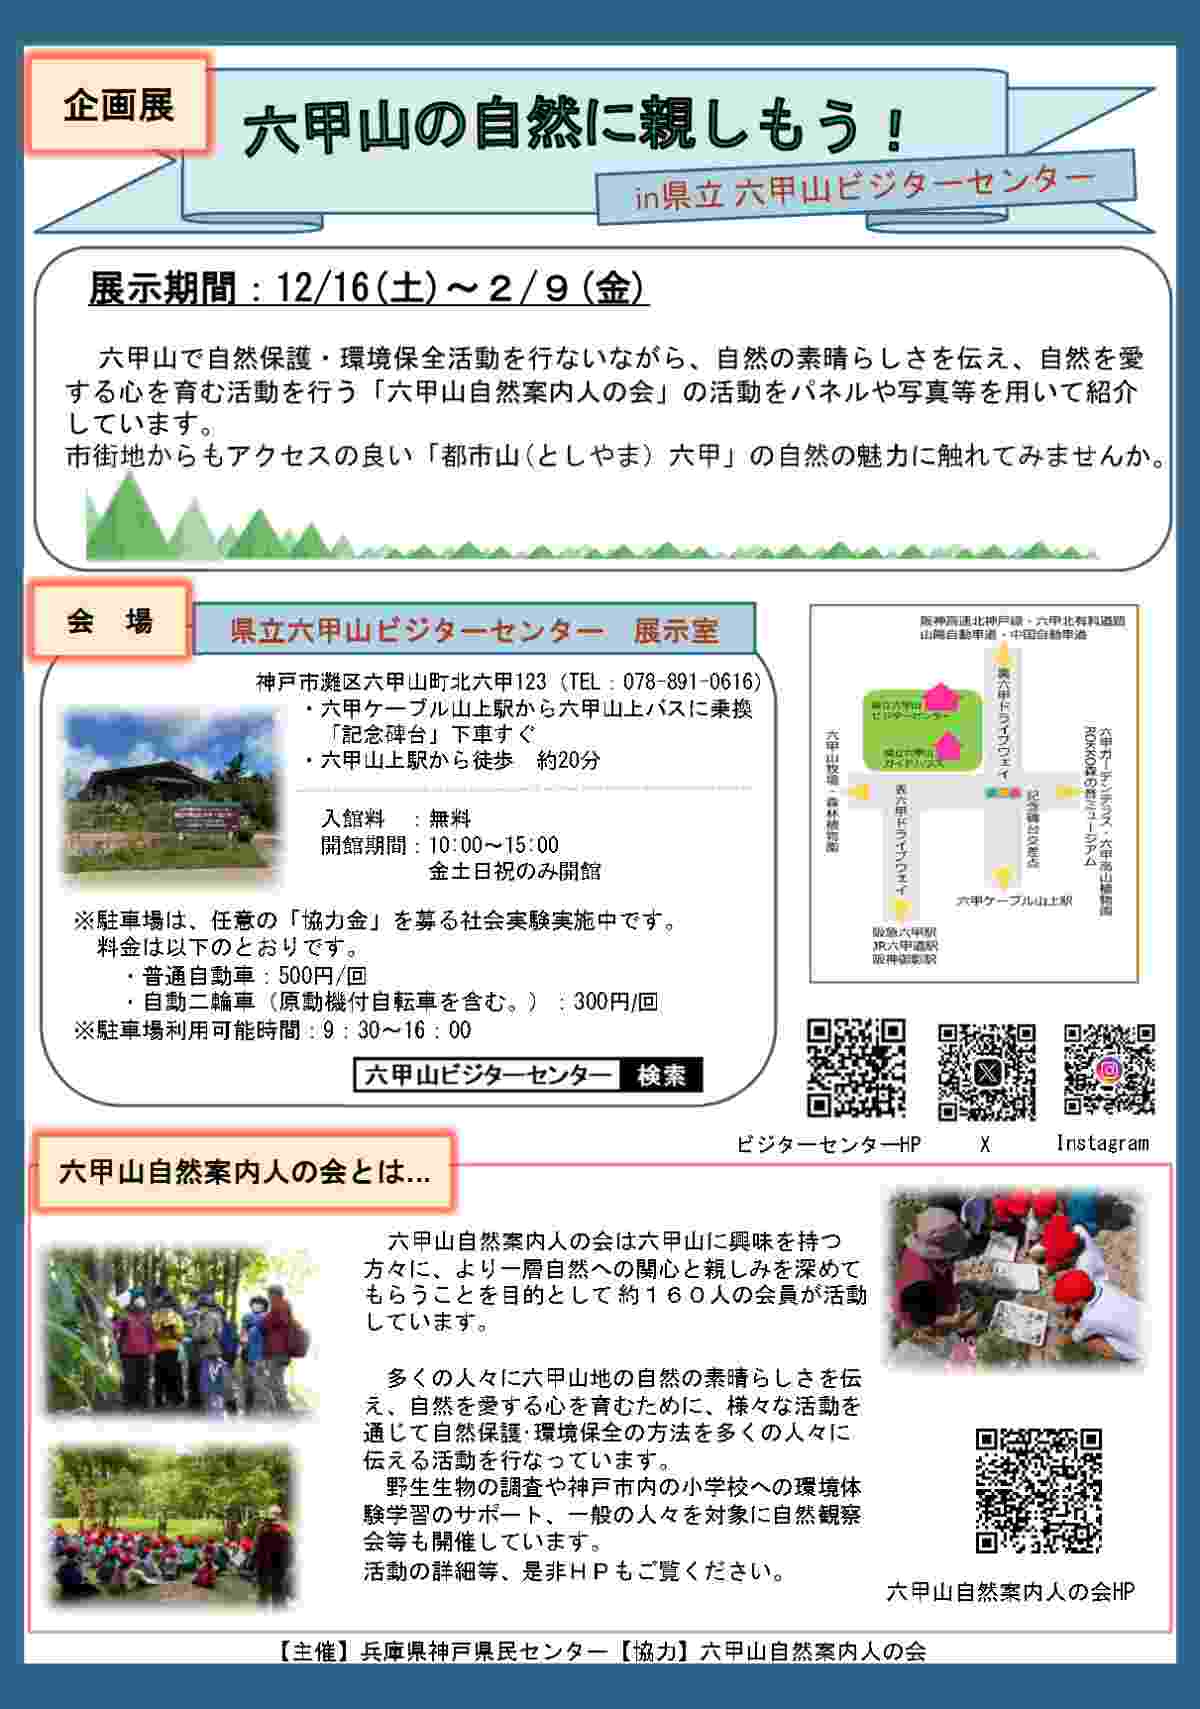 県立六甲山ビジターセンターにて企画展「六甲山の自然を学ぼう」開催　神戸市 [画像]